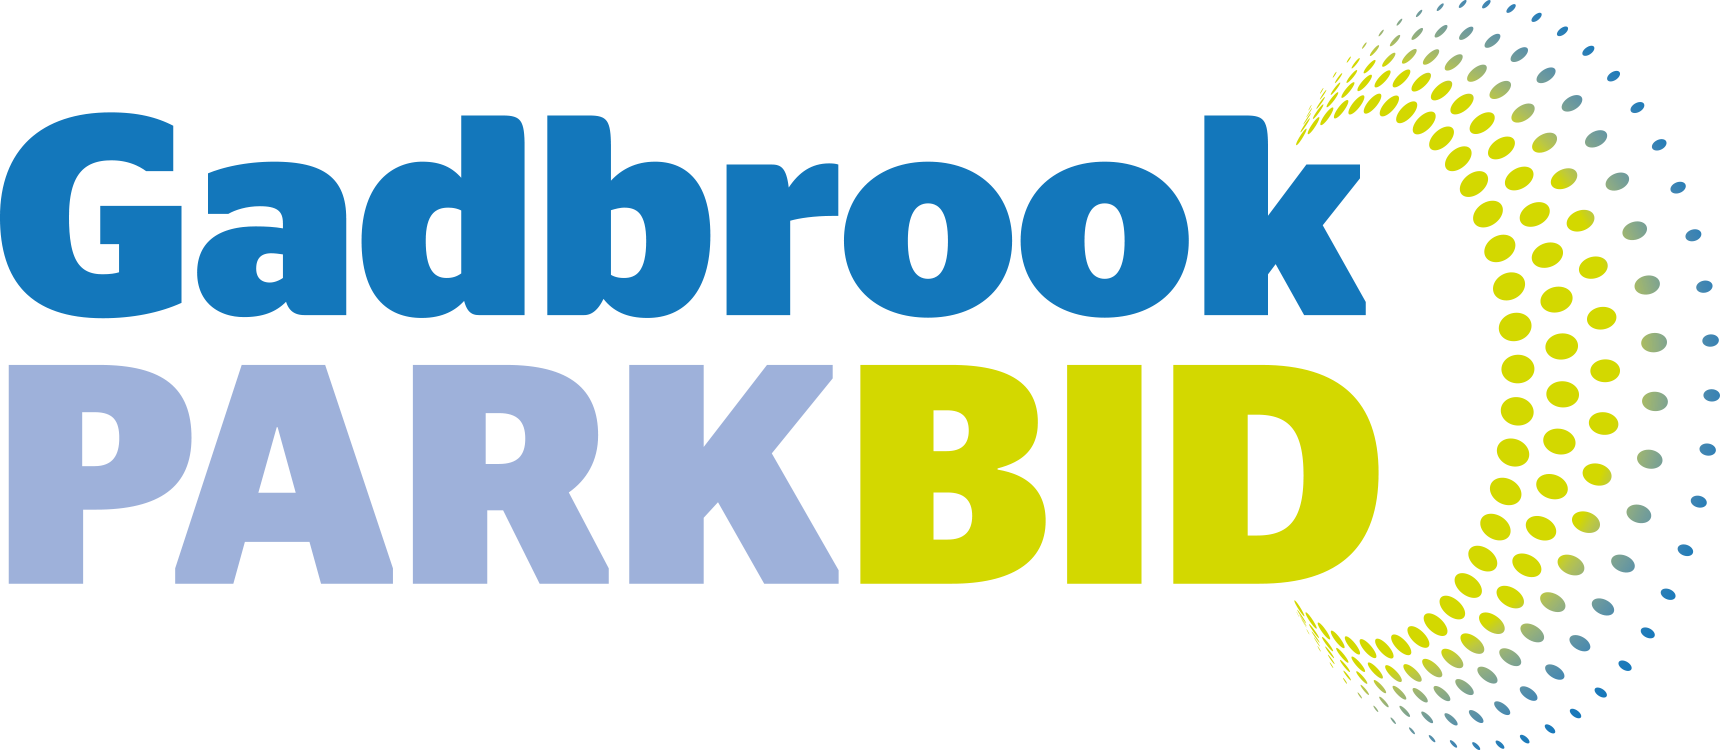 Gadbrook bid logo